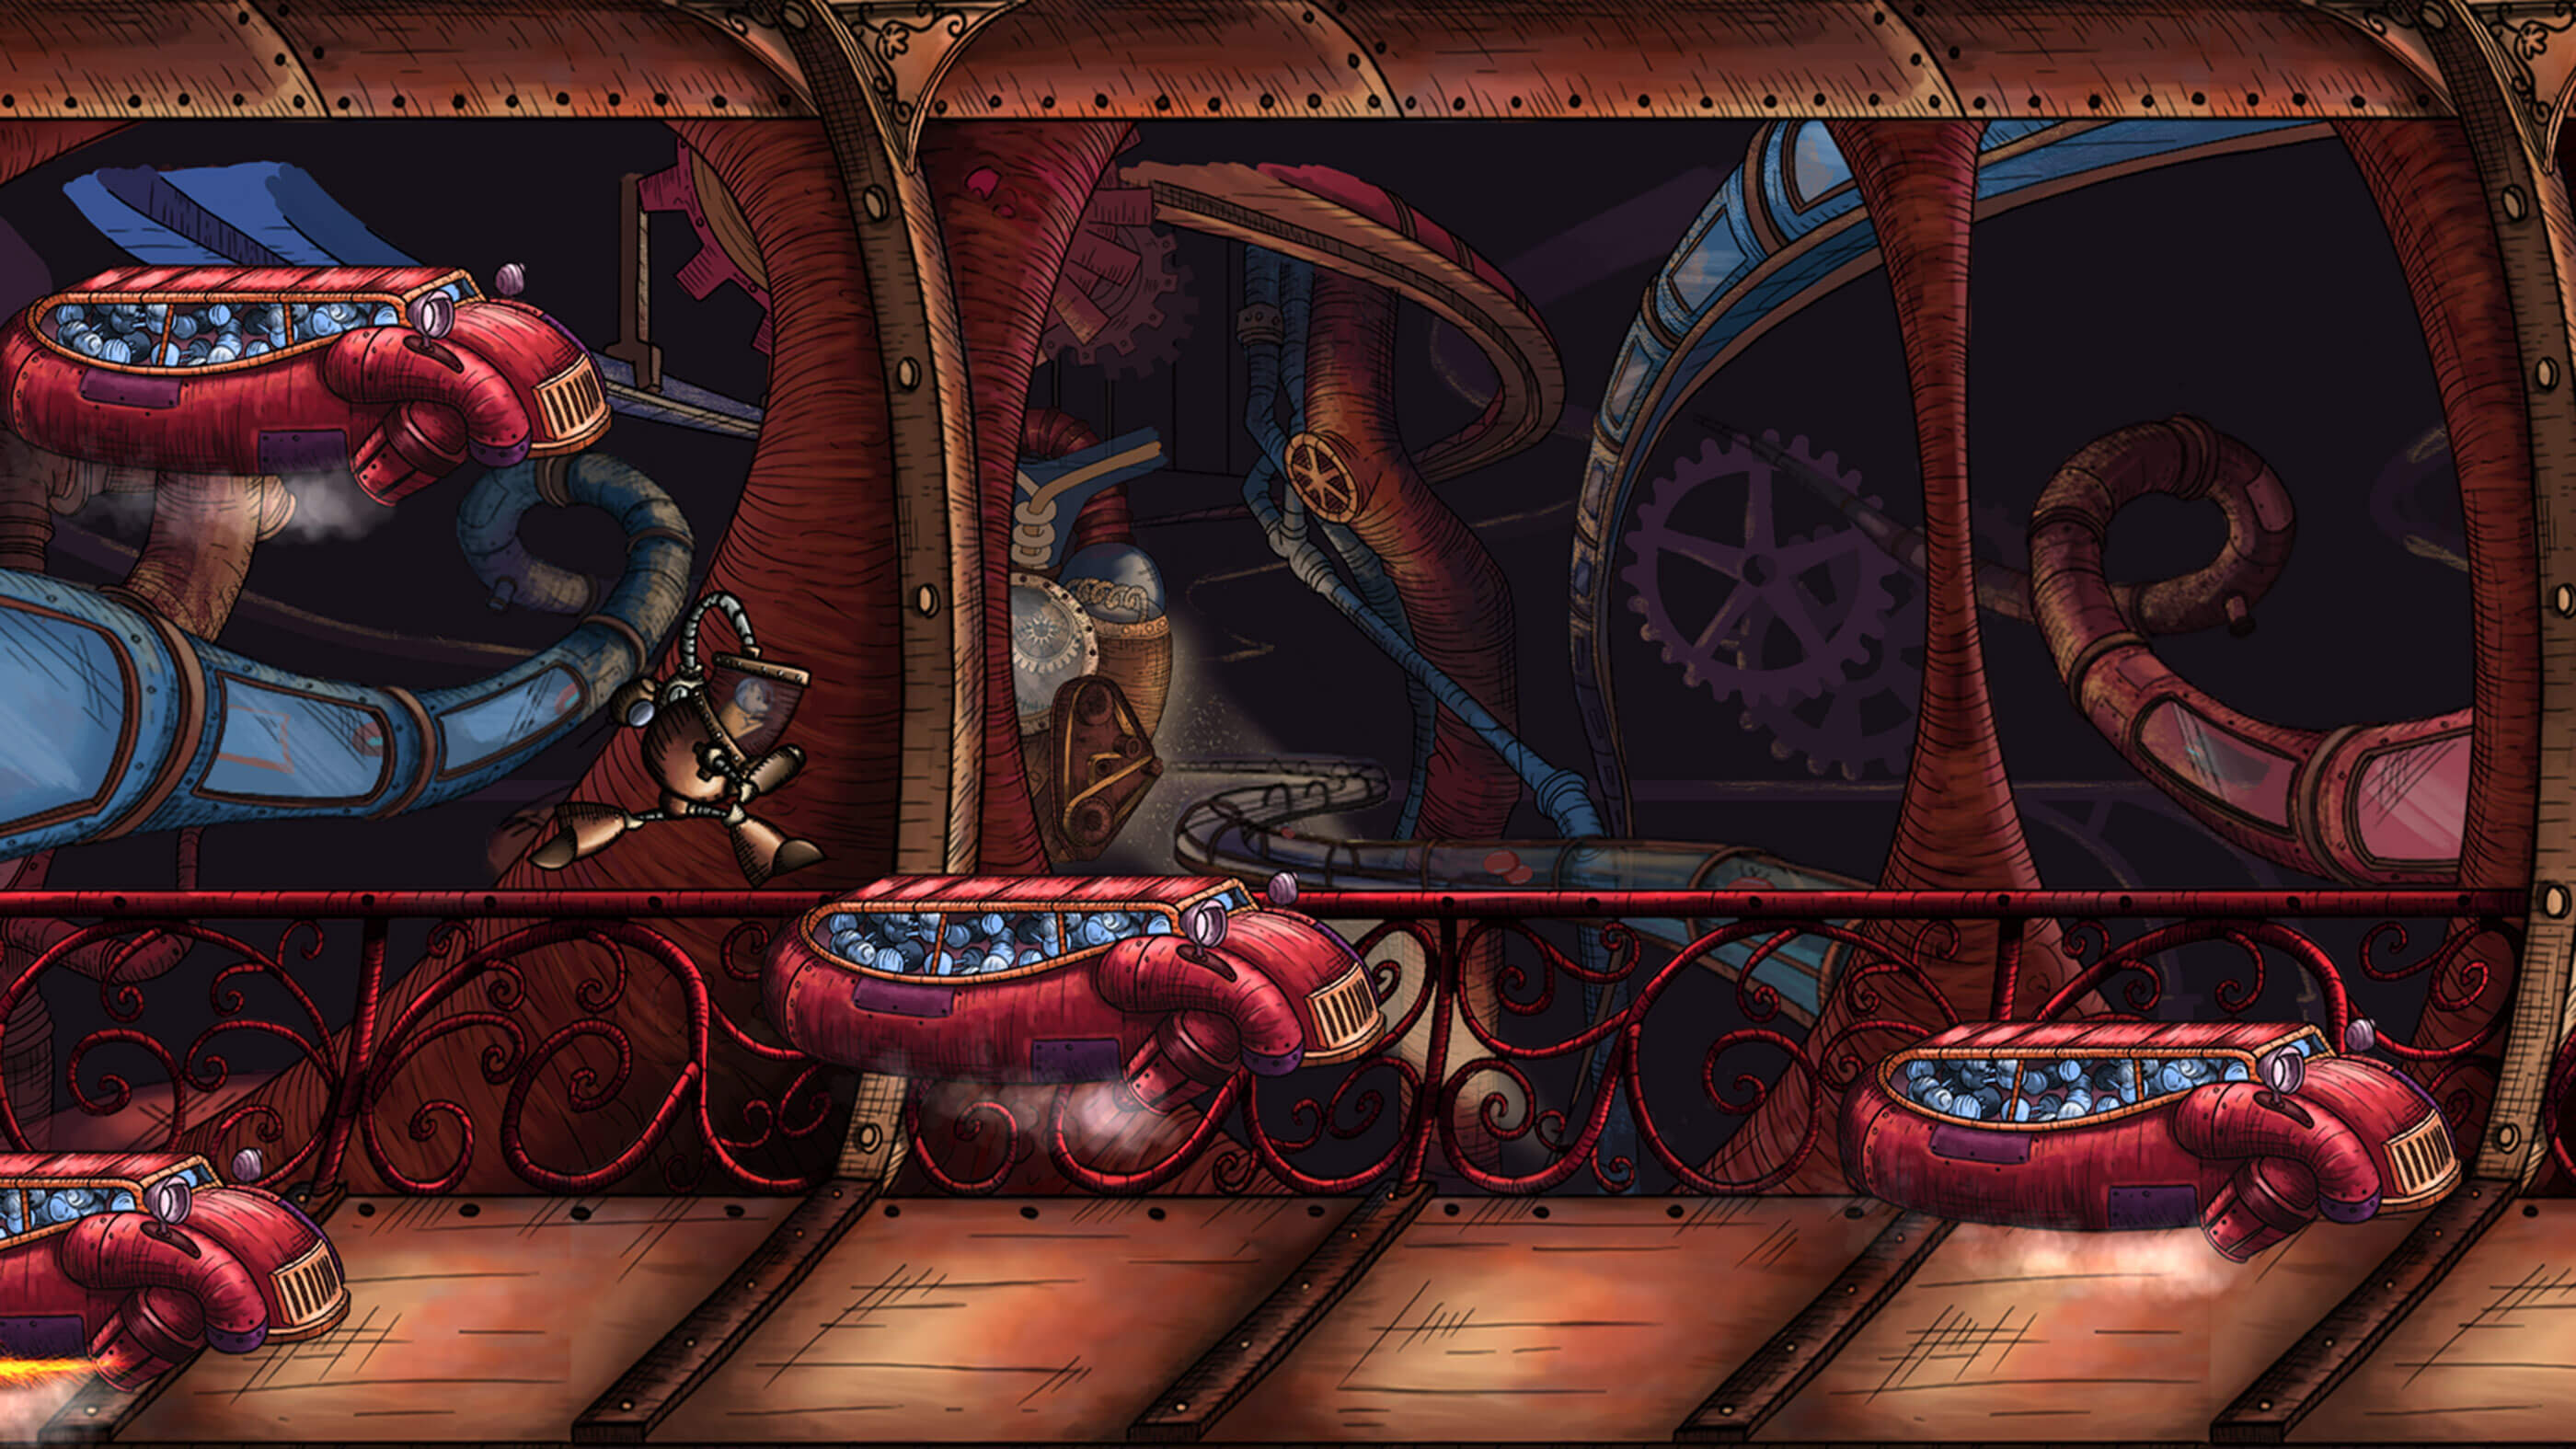 El jugador salta a una plataforma compuesta por un coche rojo lleno de latas grises.